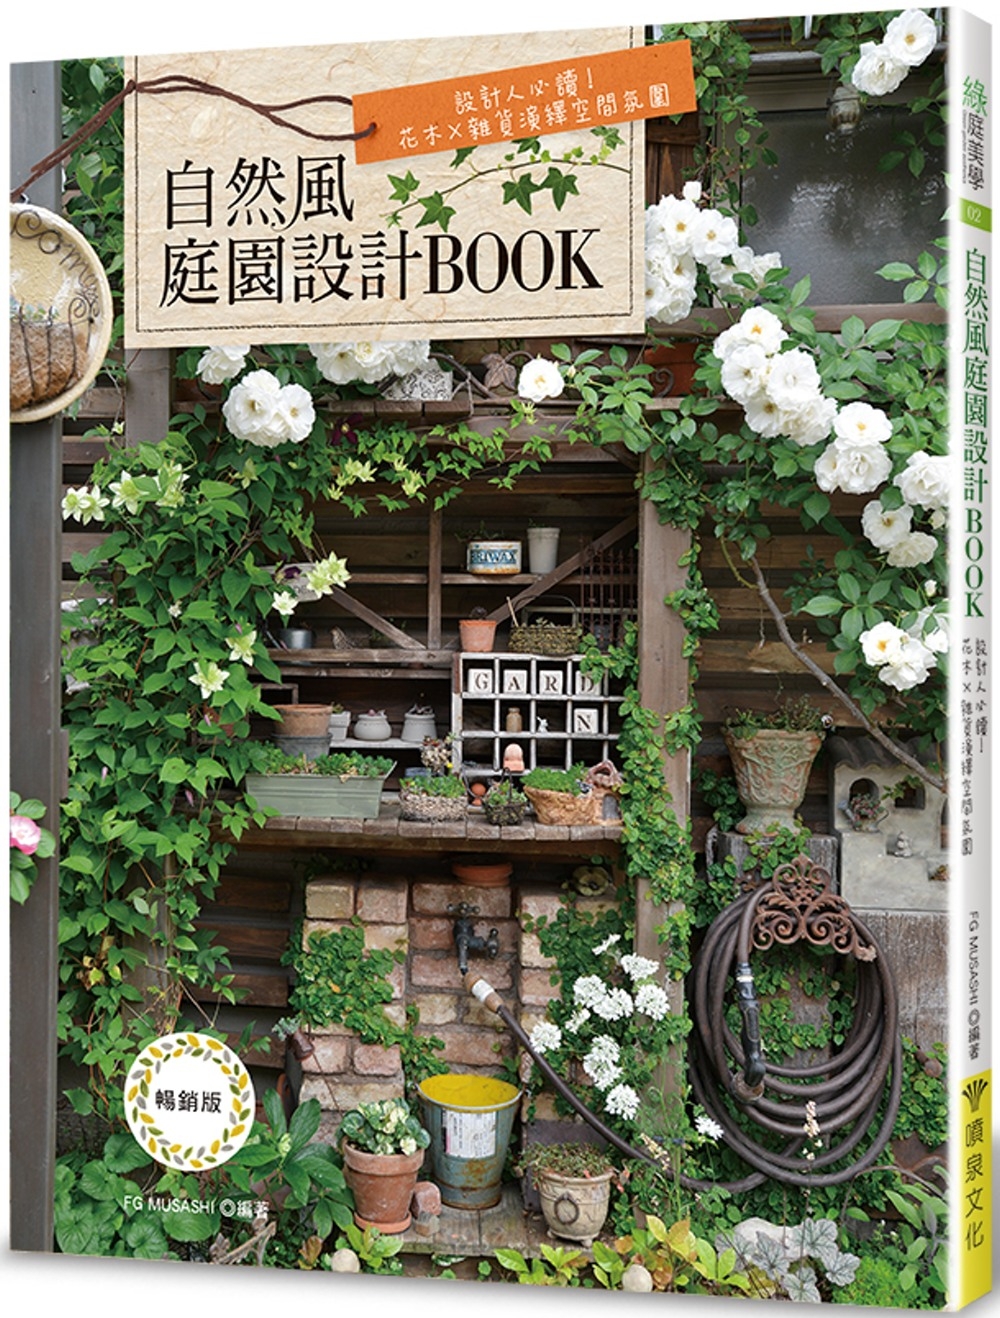 自然風庭園設計BOOK(暢銷版): 設計人必讀!花木×雜貨演繹空間氛圍(二版)